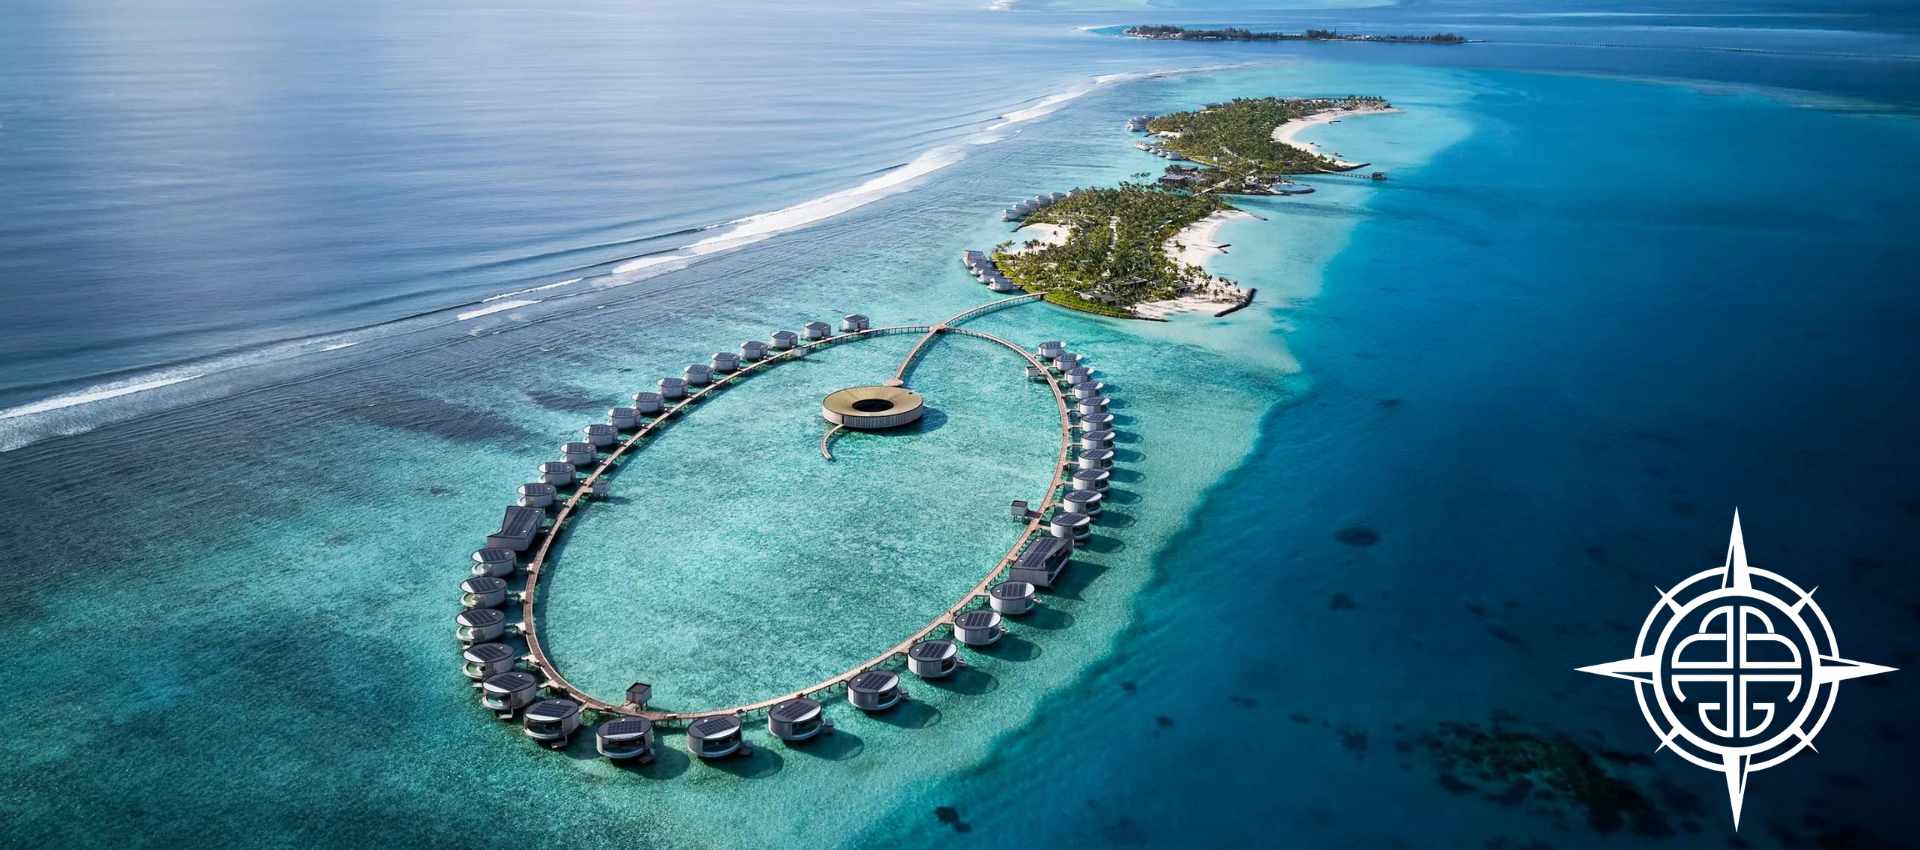 Ritz-Carlton Maldives, Fari Islands Resort in the Maldives | BuDhaGirl